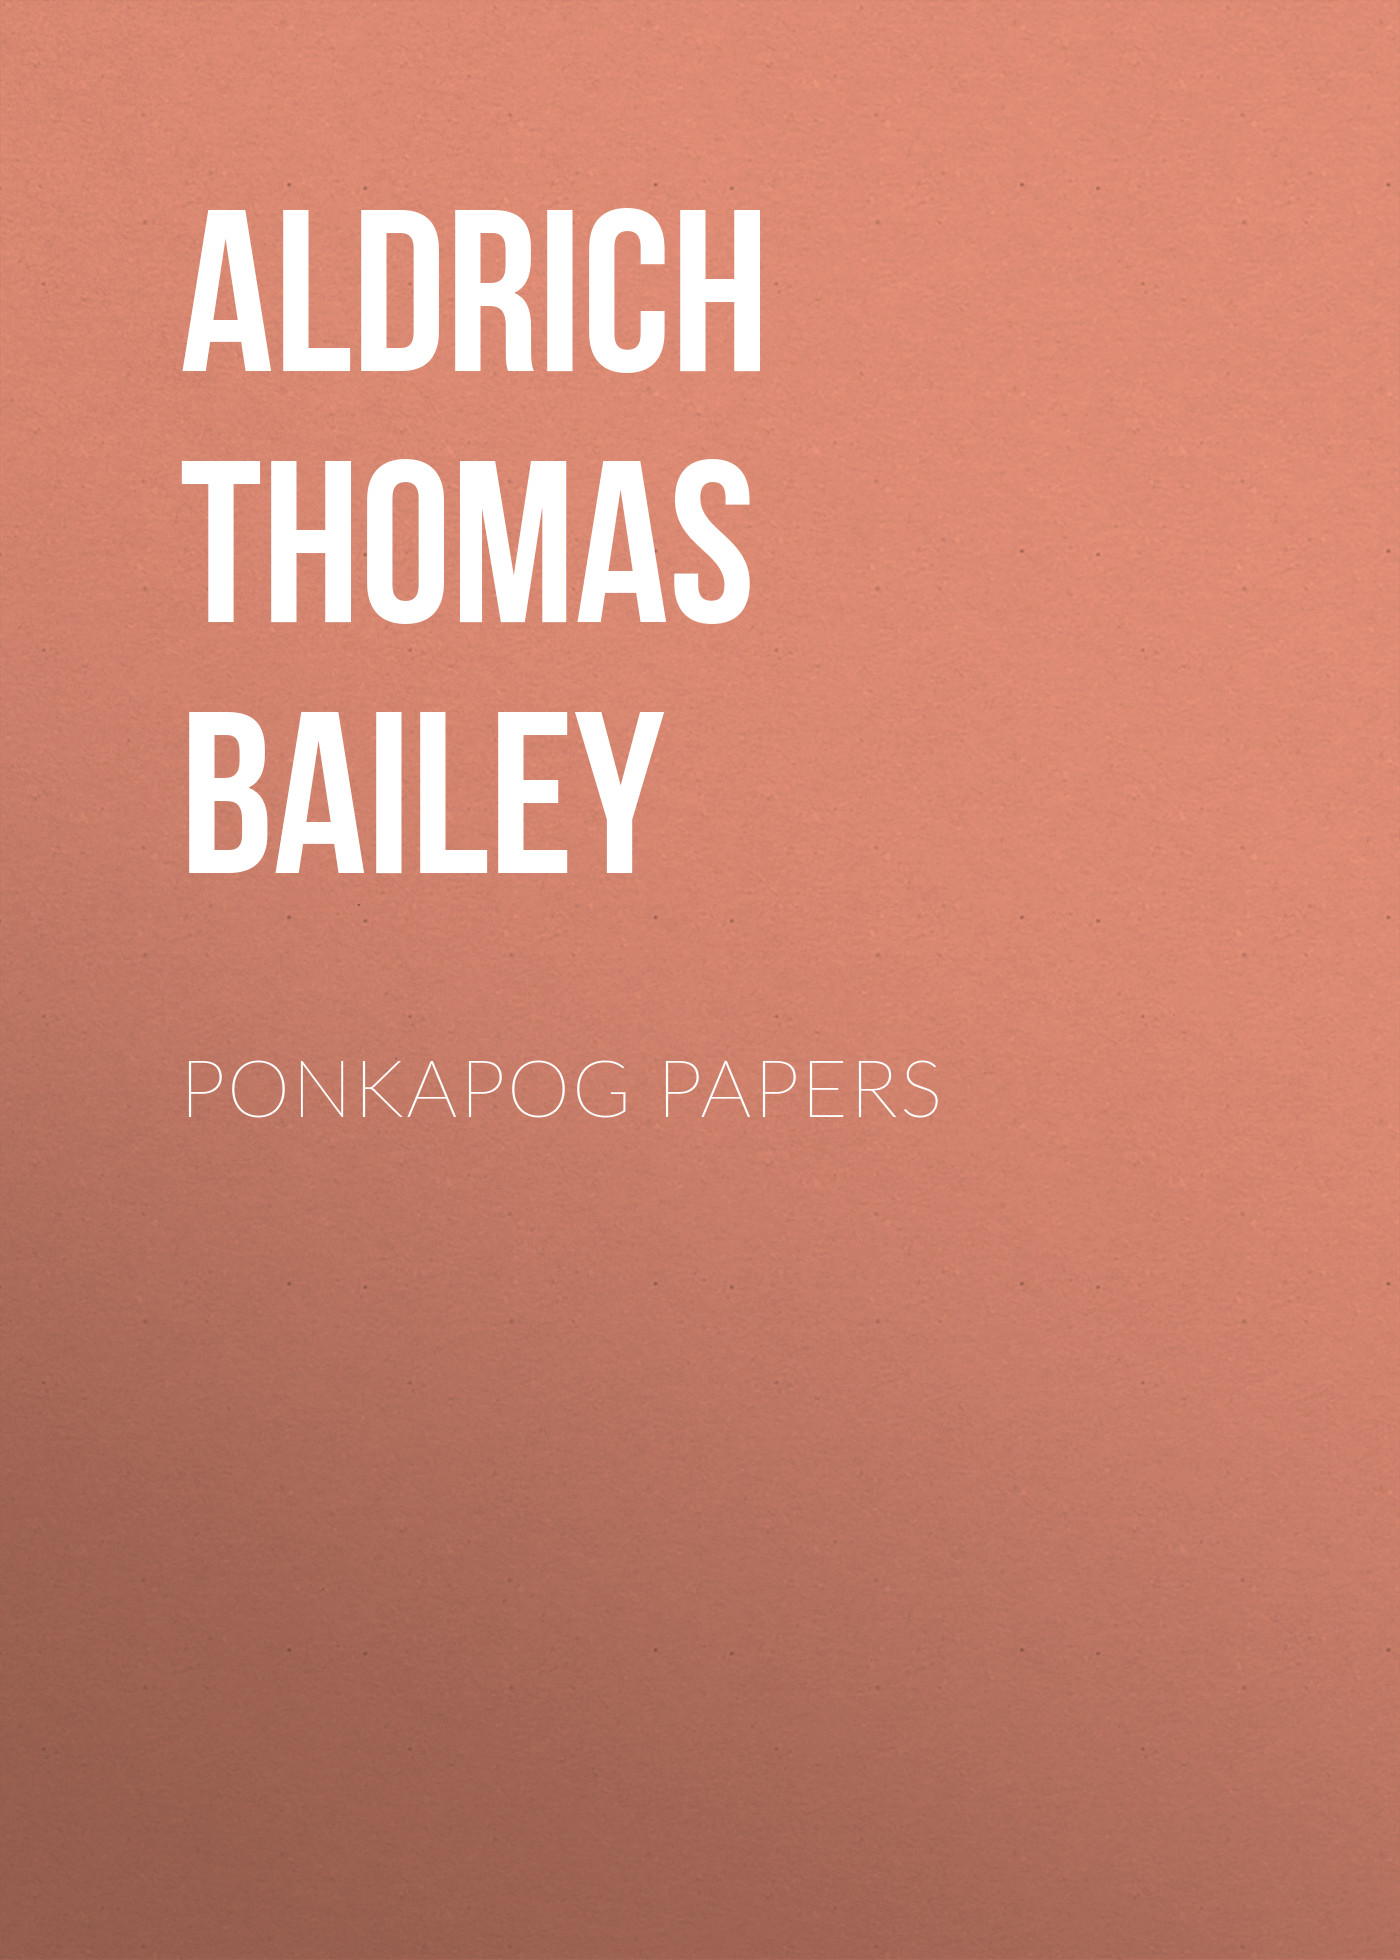 Книга Ponkapog Papers из серии , созданная Thomas Aldrich, может относится к жанру Зарубежная классика, Литература 19 века, Зарубежная старинная литература. Стоимость электронной книги Ponkapog Papers с идентификатором 36365422 составляет 0 руб.